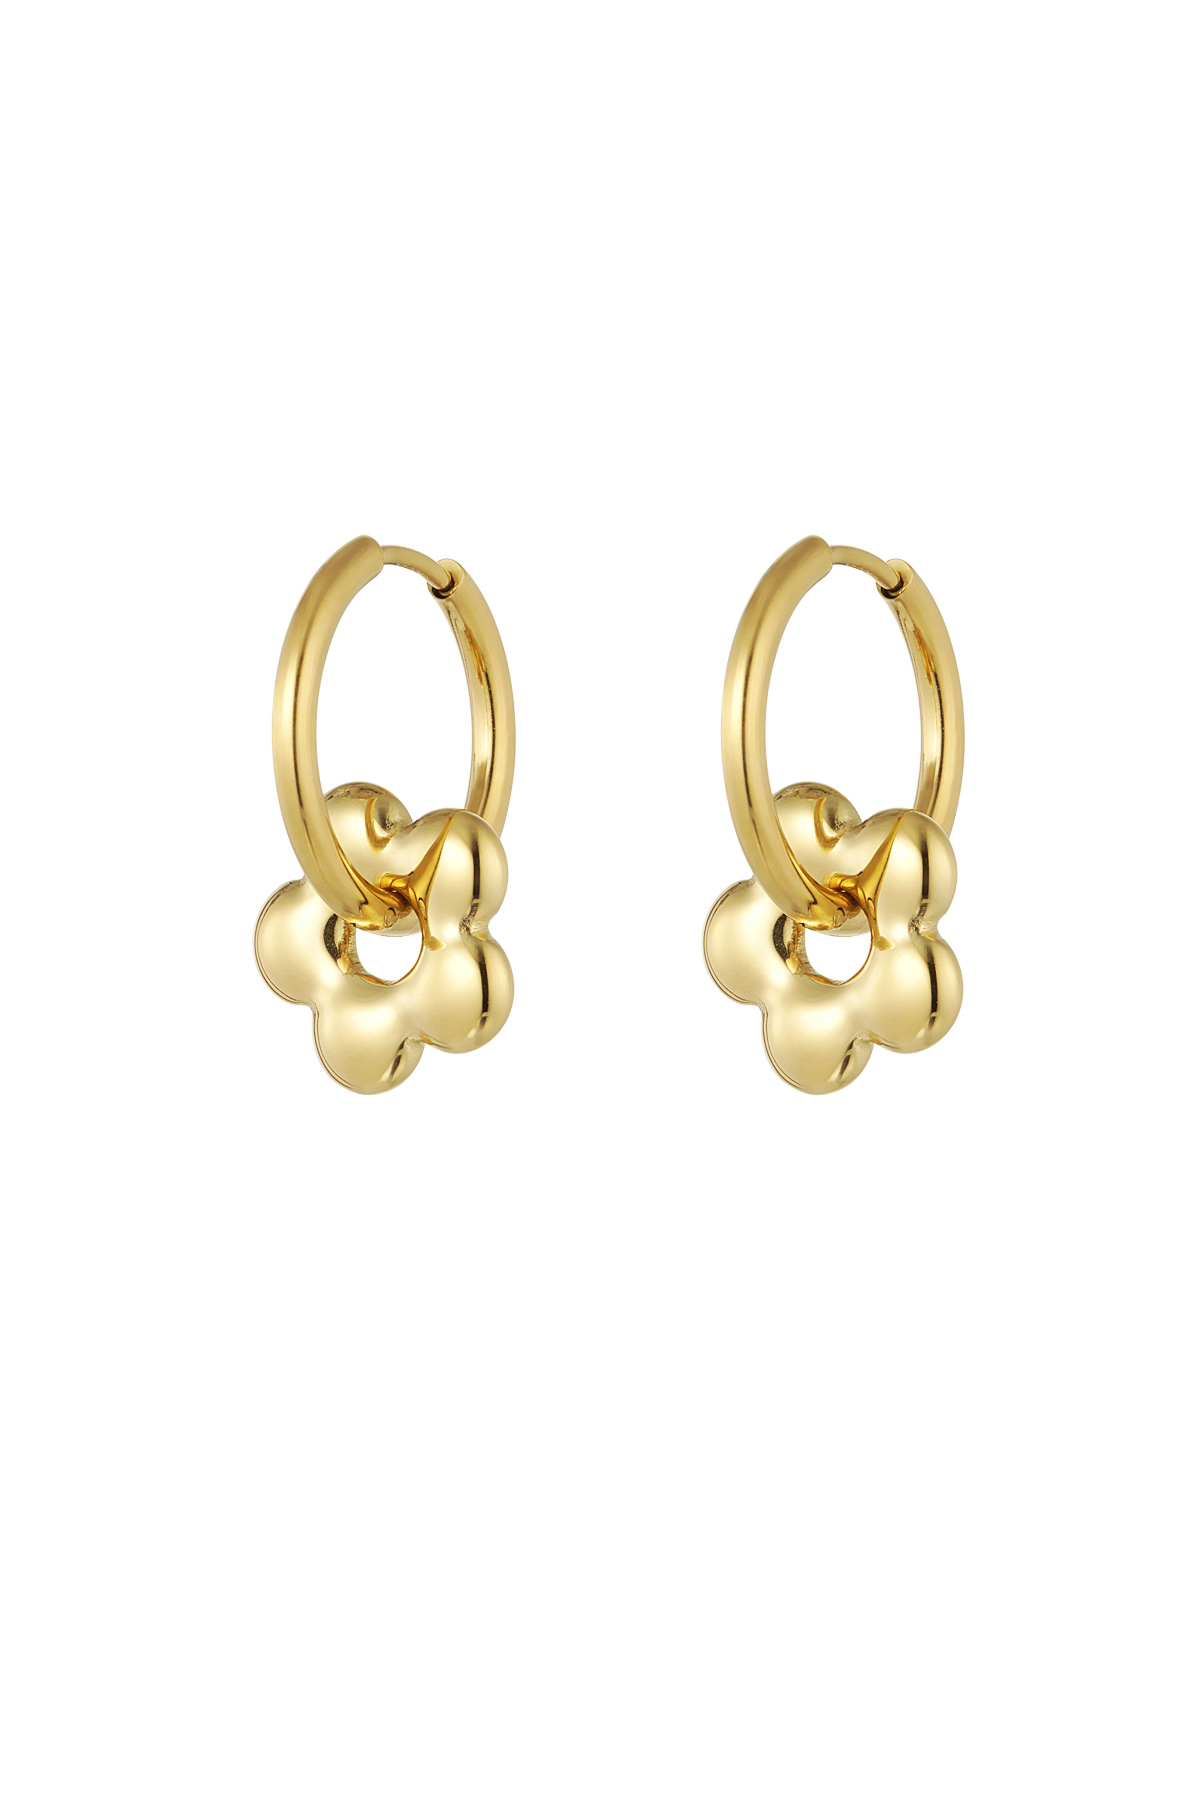 Basic flower charm hoop earrings h5 